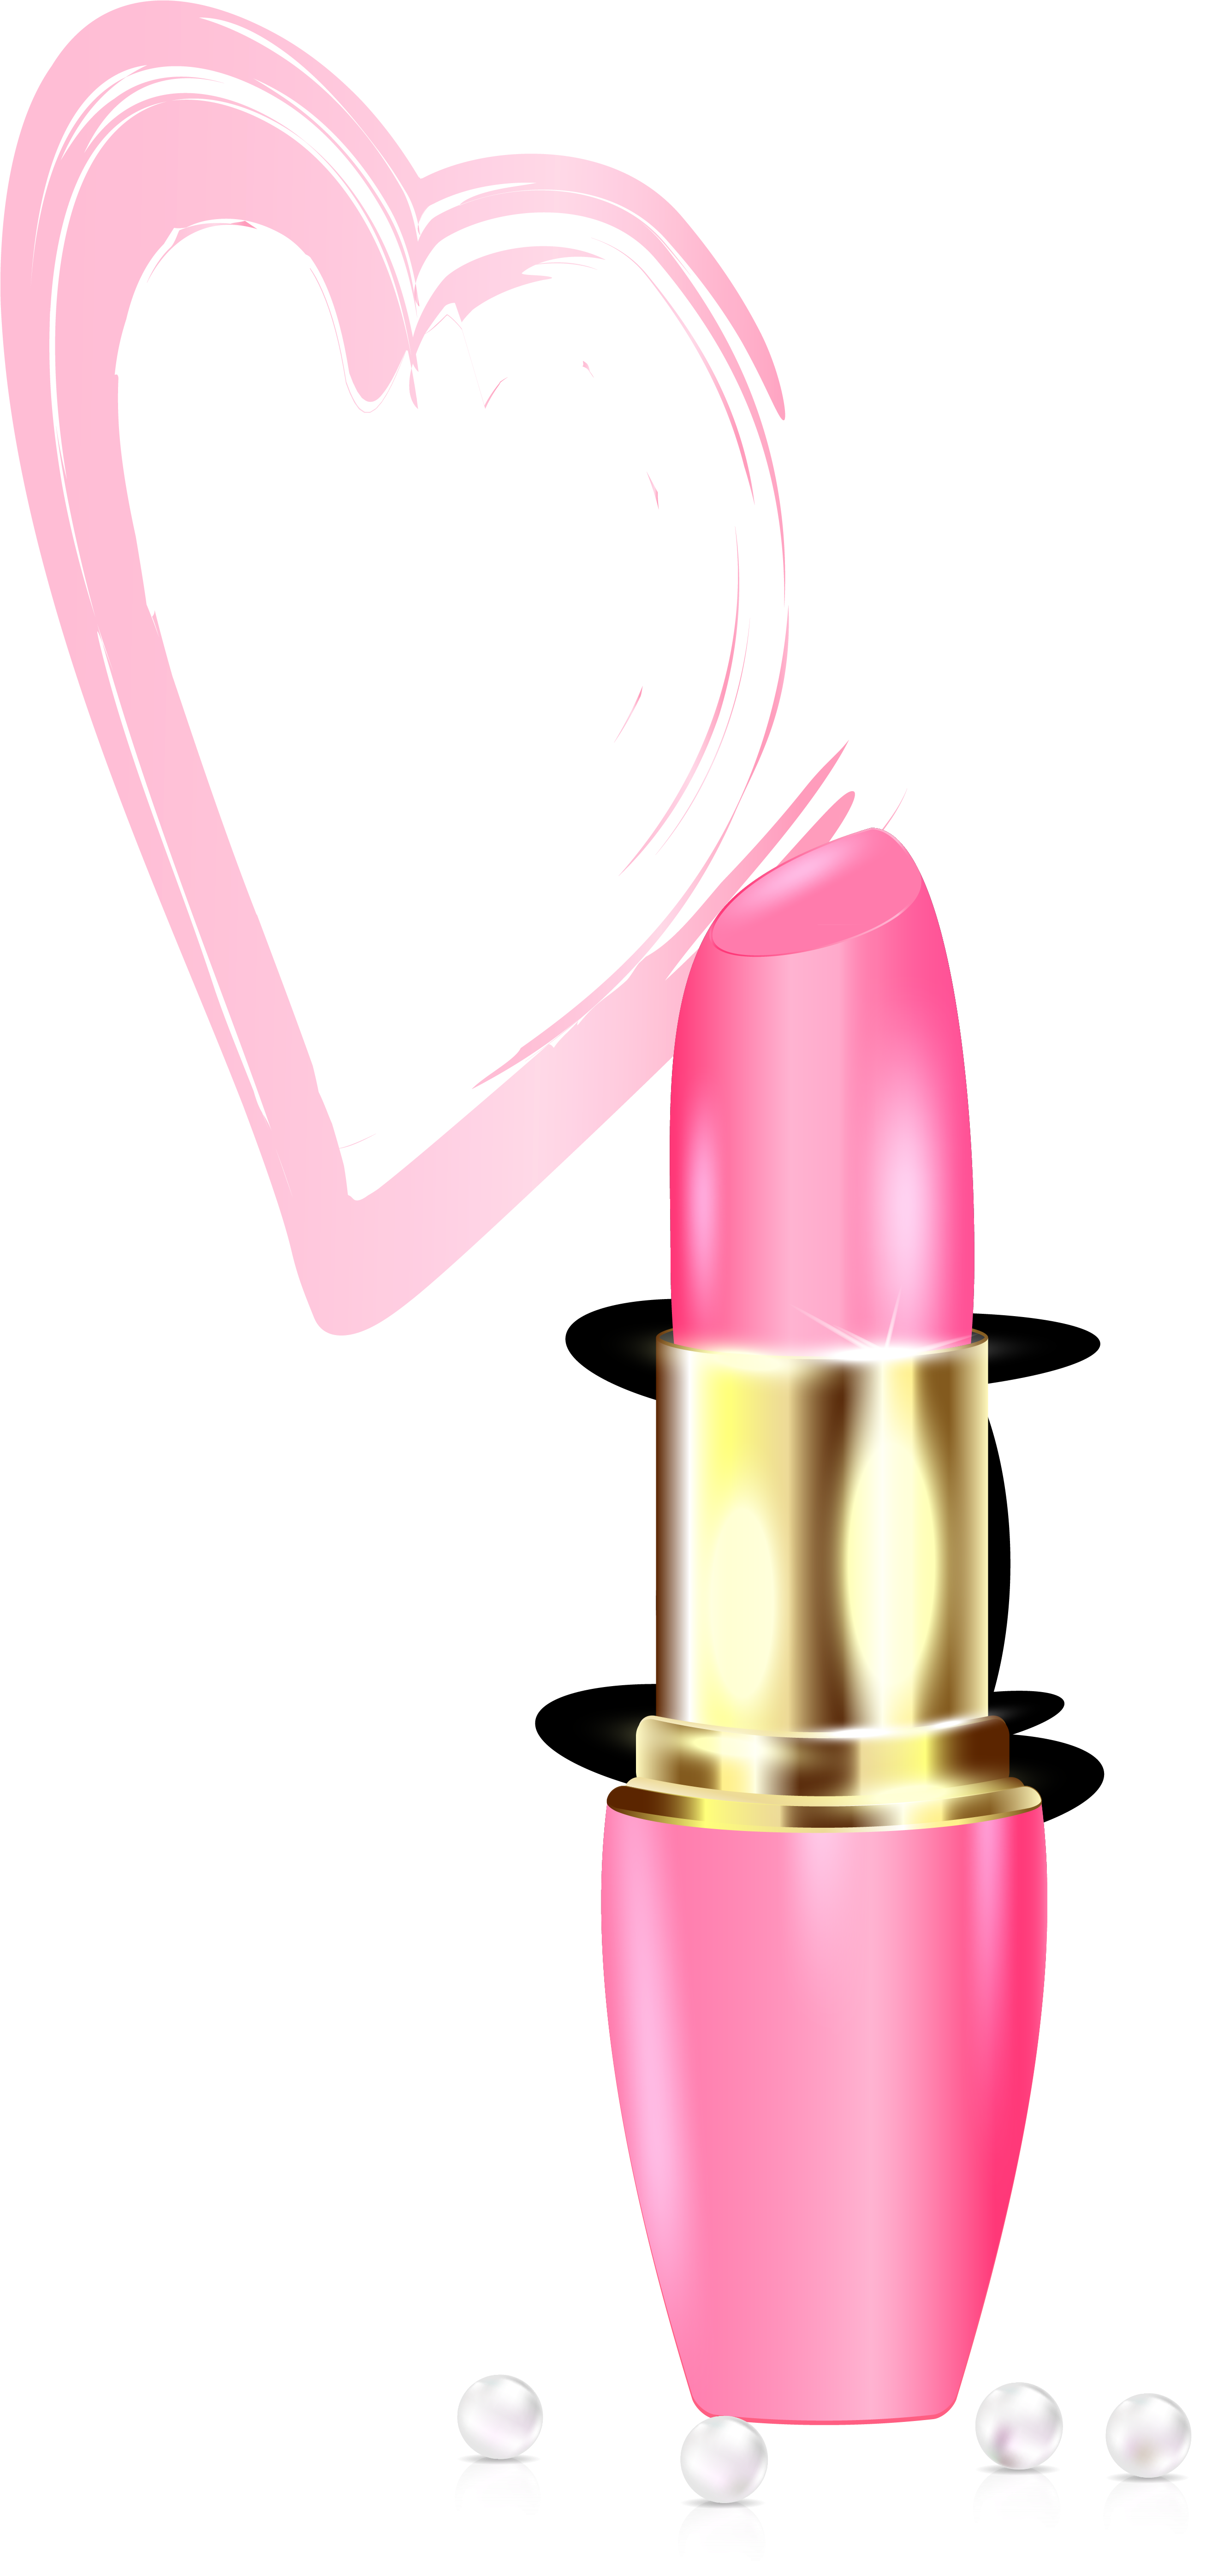 Lipstick Drawing Make-up - Lipstick (2614x5704)